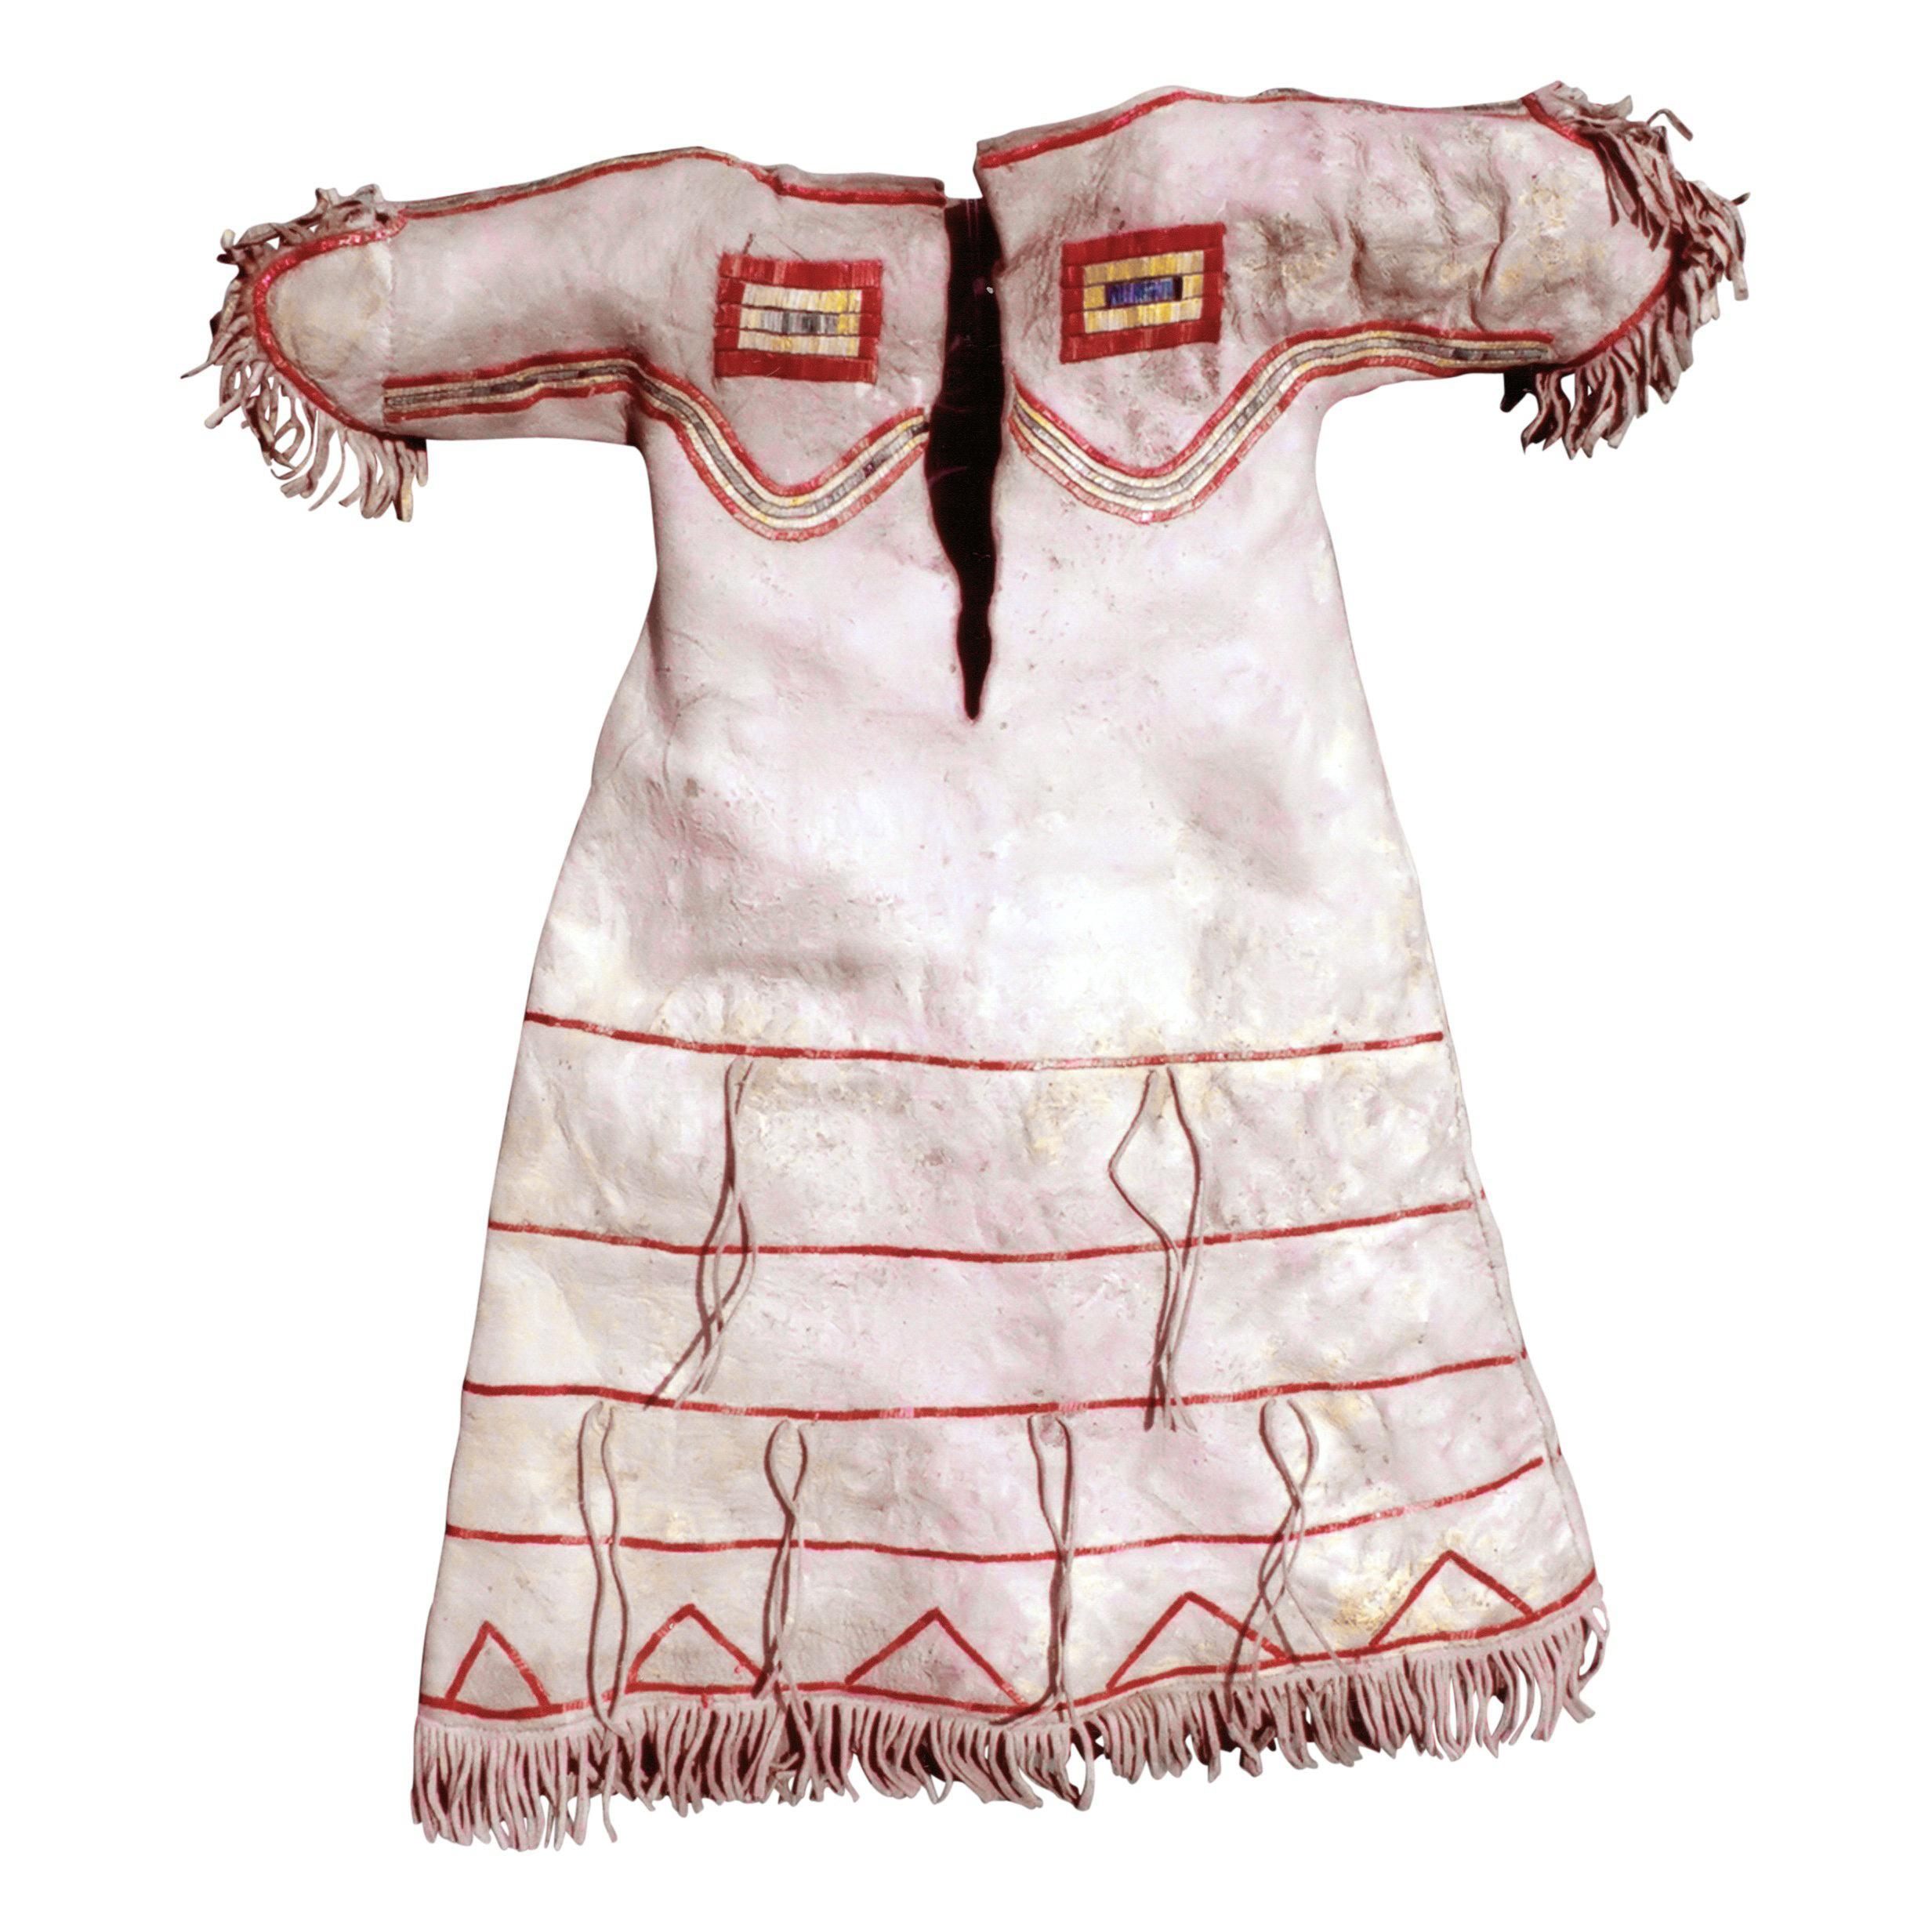 Kleid eines Lakota-Sioux-Kindes mit Rüschen auf Büffelleder; vor 1880 gesammelt und in die Maryland Academy of Art and Science aufgenommen. Es wurde 1968 vom Museum an H. Bruce Greene, den damaligen Kurator des Museums, veräußert.

Zeitraum: ca.